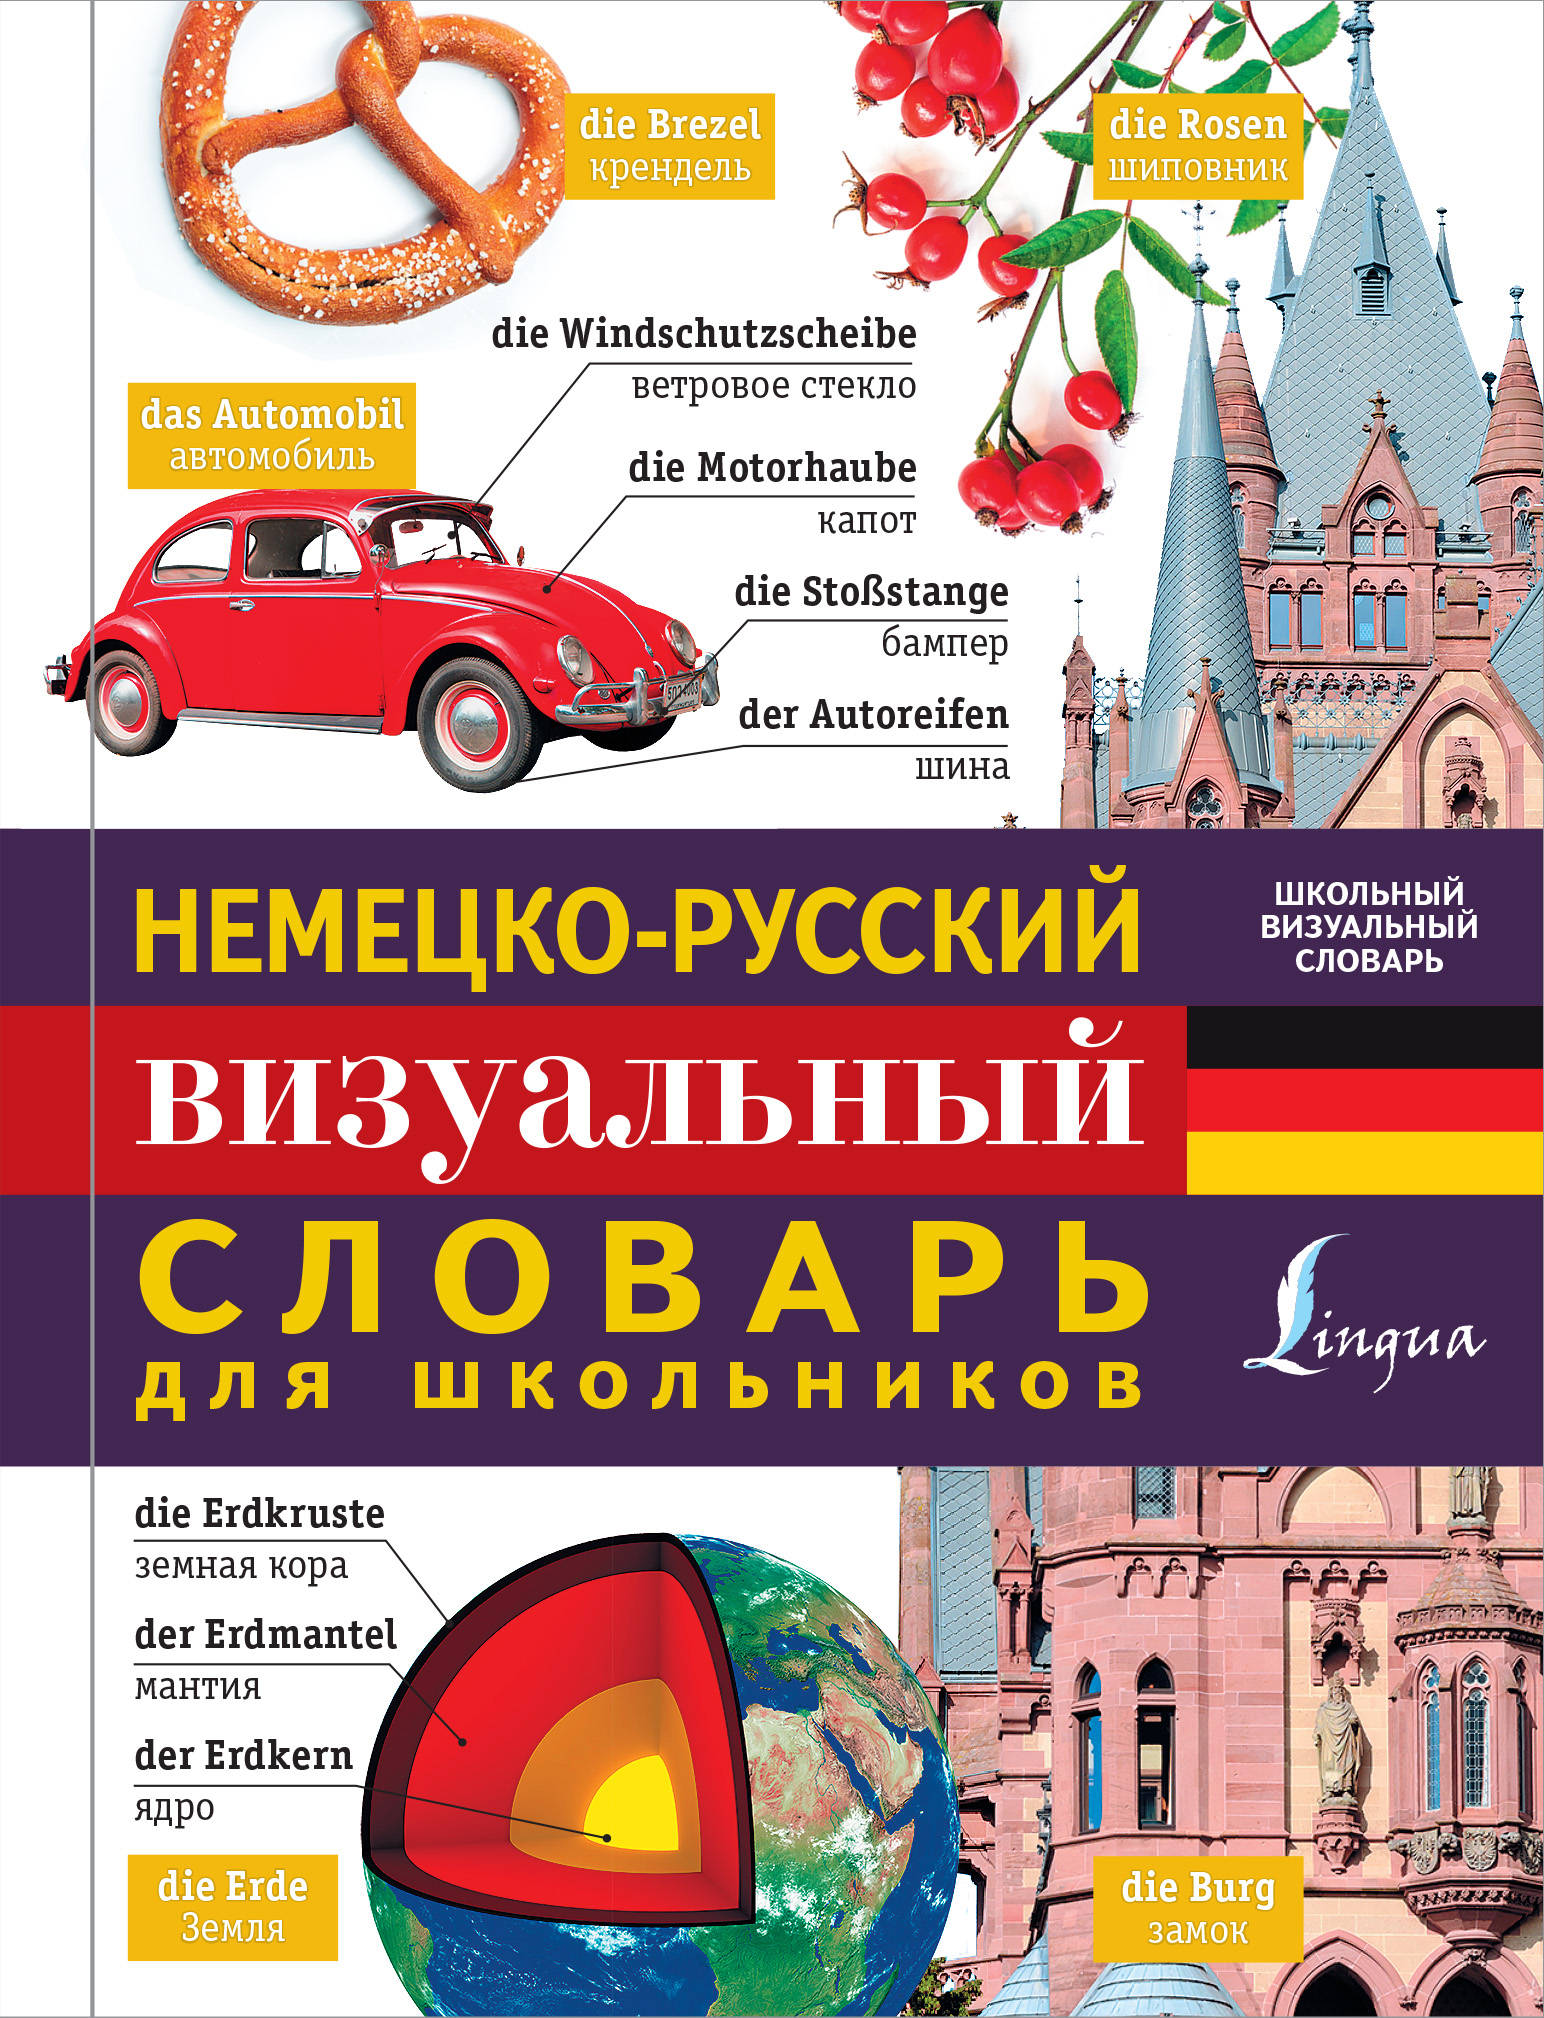  Немецко-русский визуальный словарь для школьников - страница 0